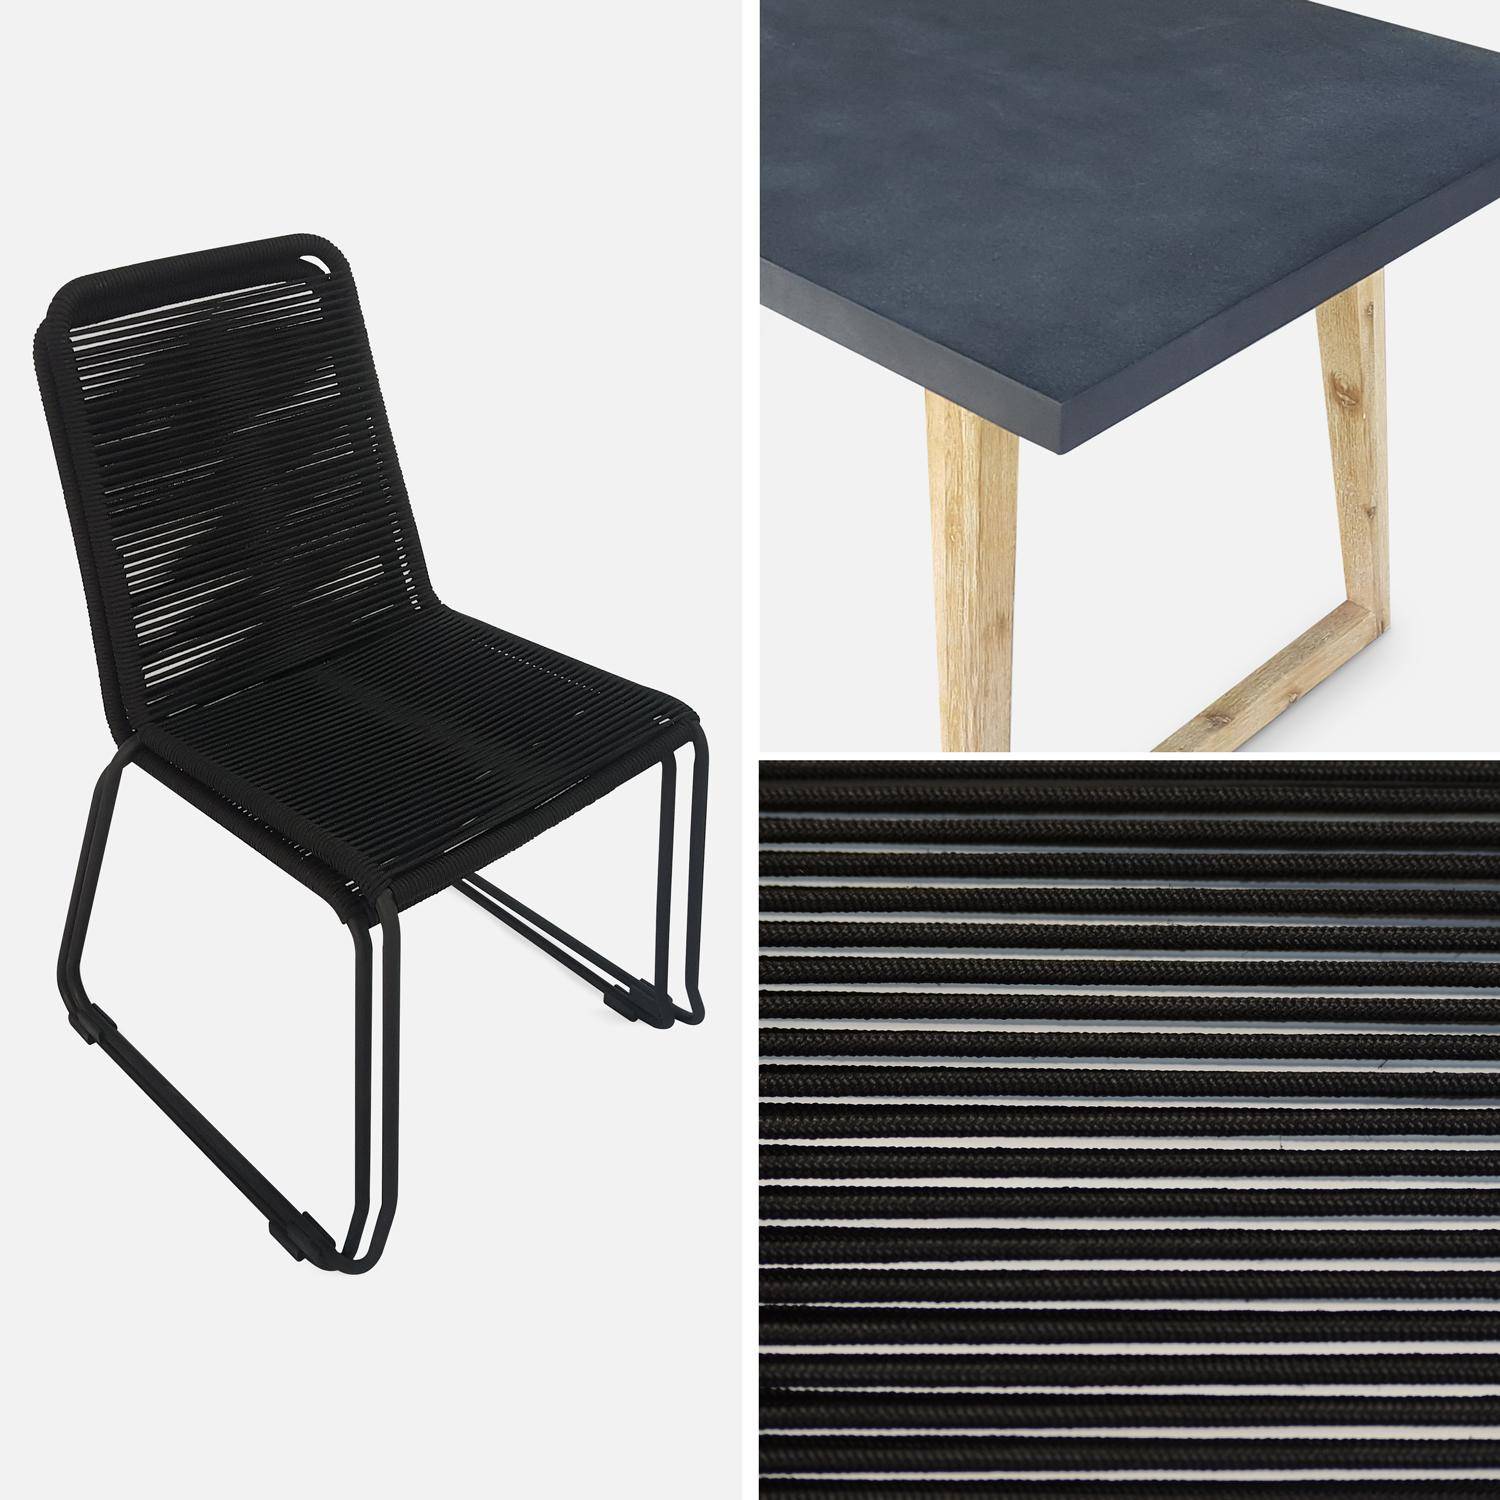 Table de jardin rectangle en fibre de ciment, effet béton, 160cm Borneo et chaises de jardin Brasilia en corde noire empilables Photo4